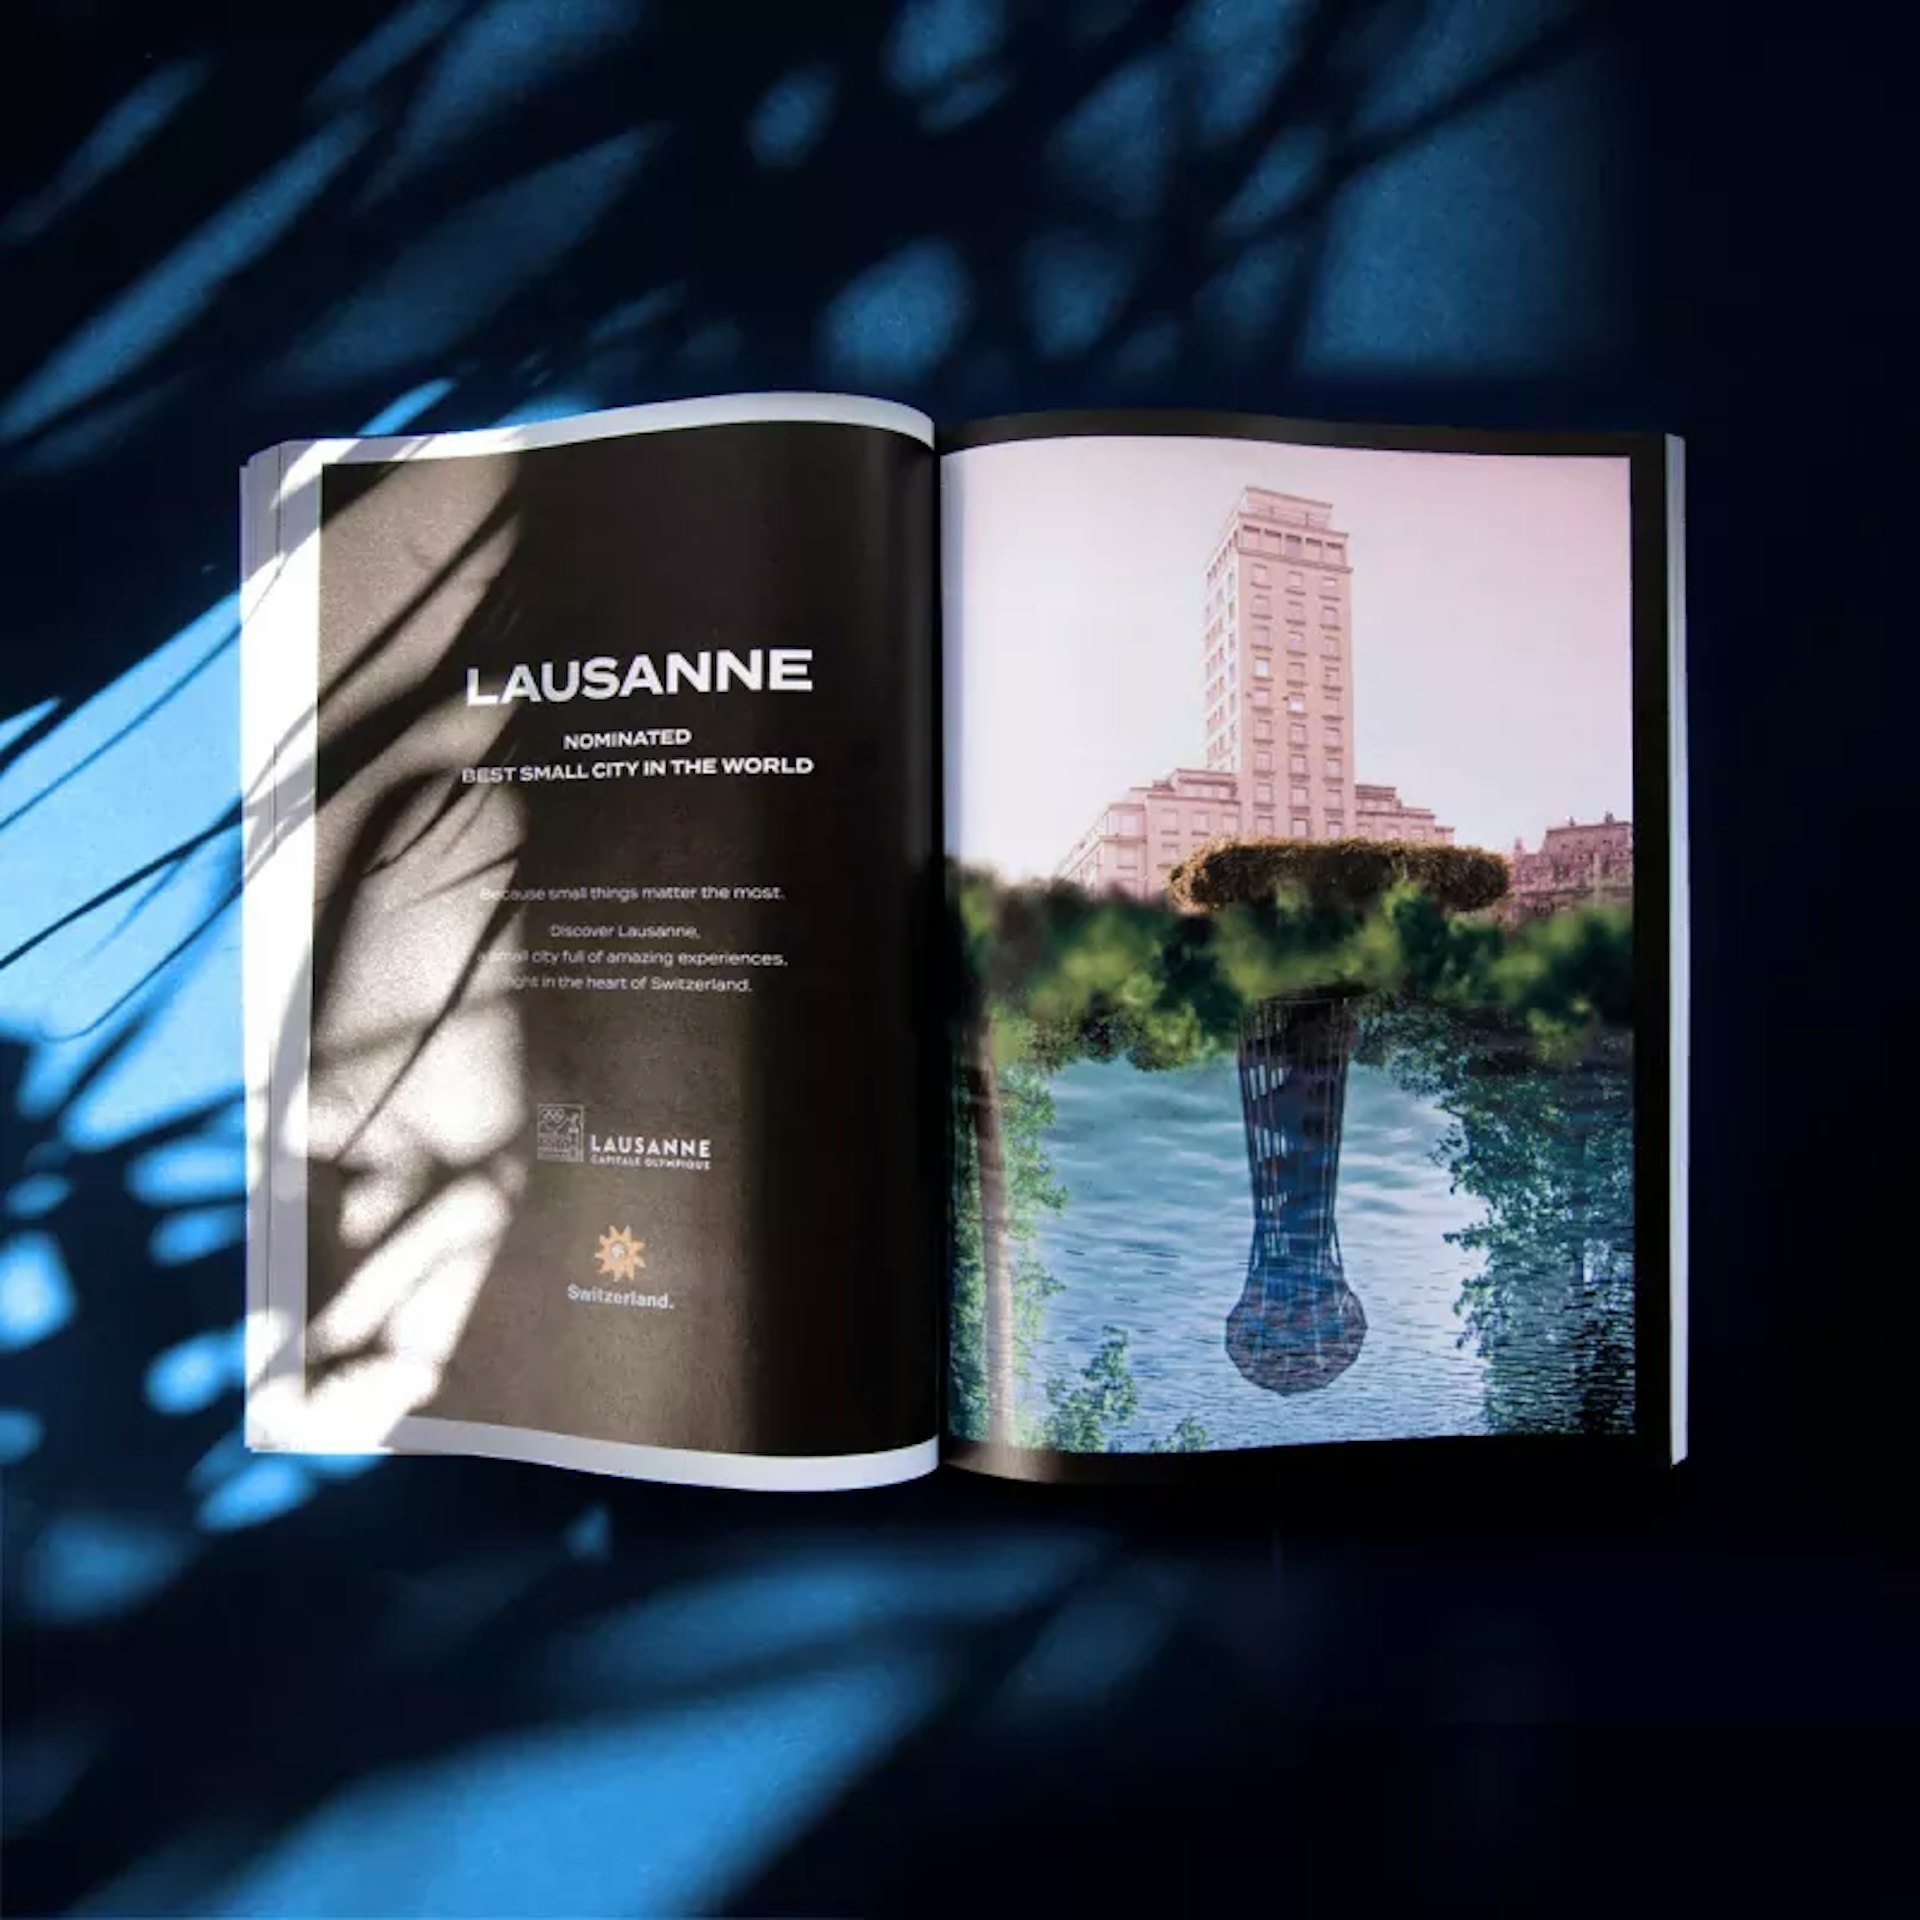 Page de magazine avec une publicité pour Lausanne, meilleure petite ville du monde